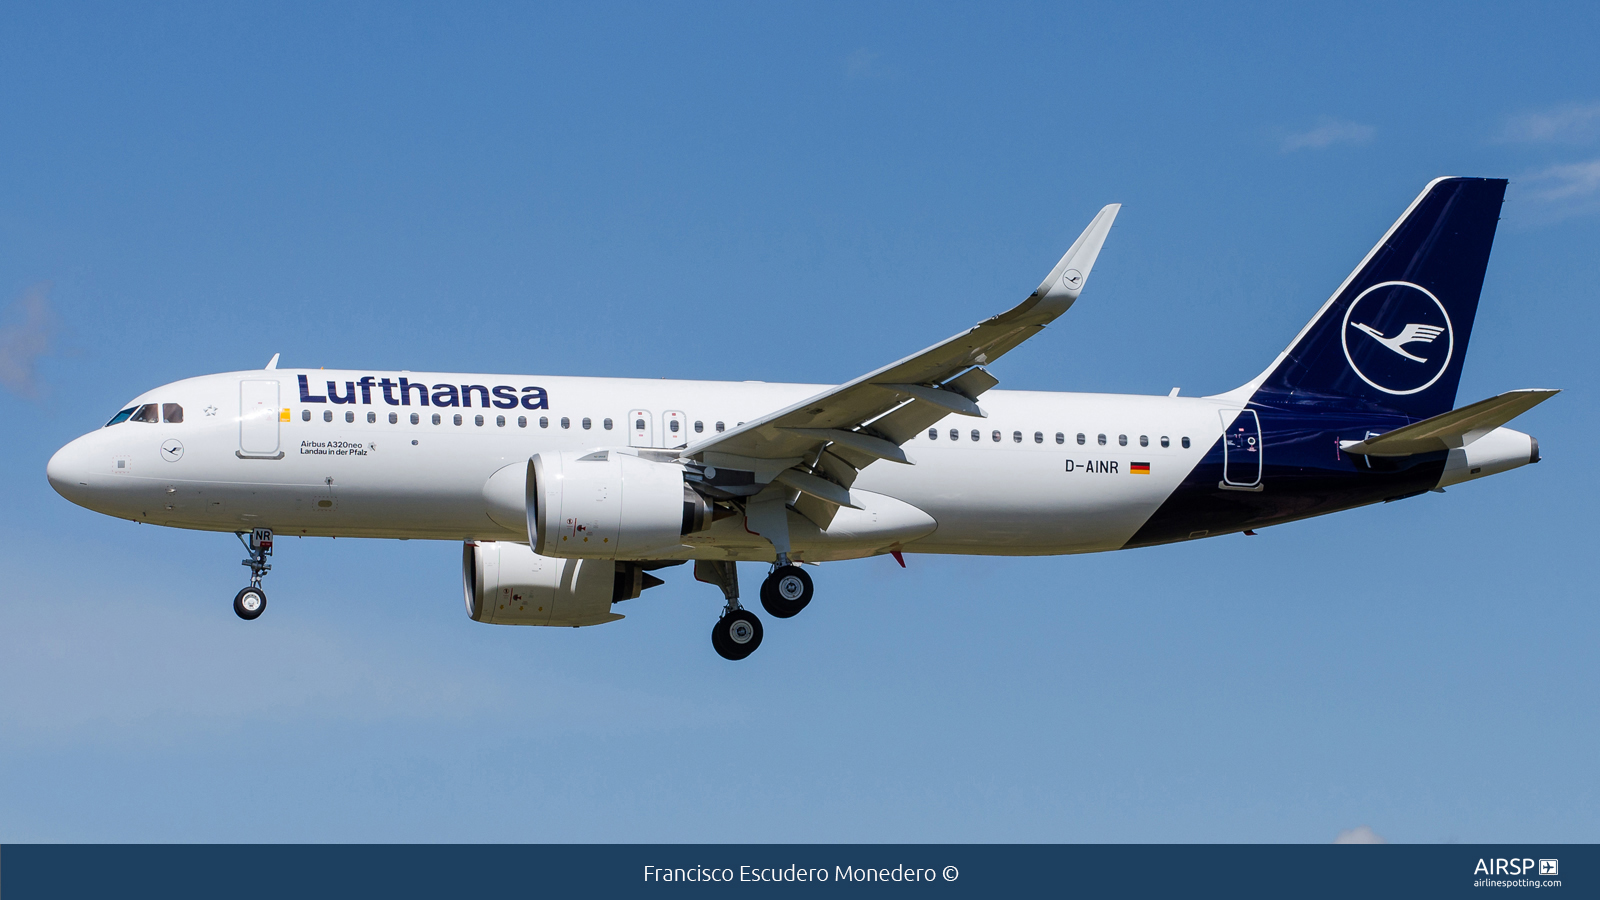 Lufthansa  Airbus A320neo  D-AINR